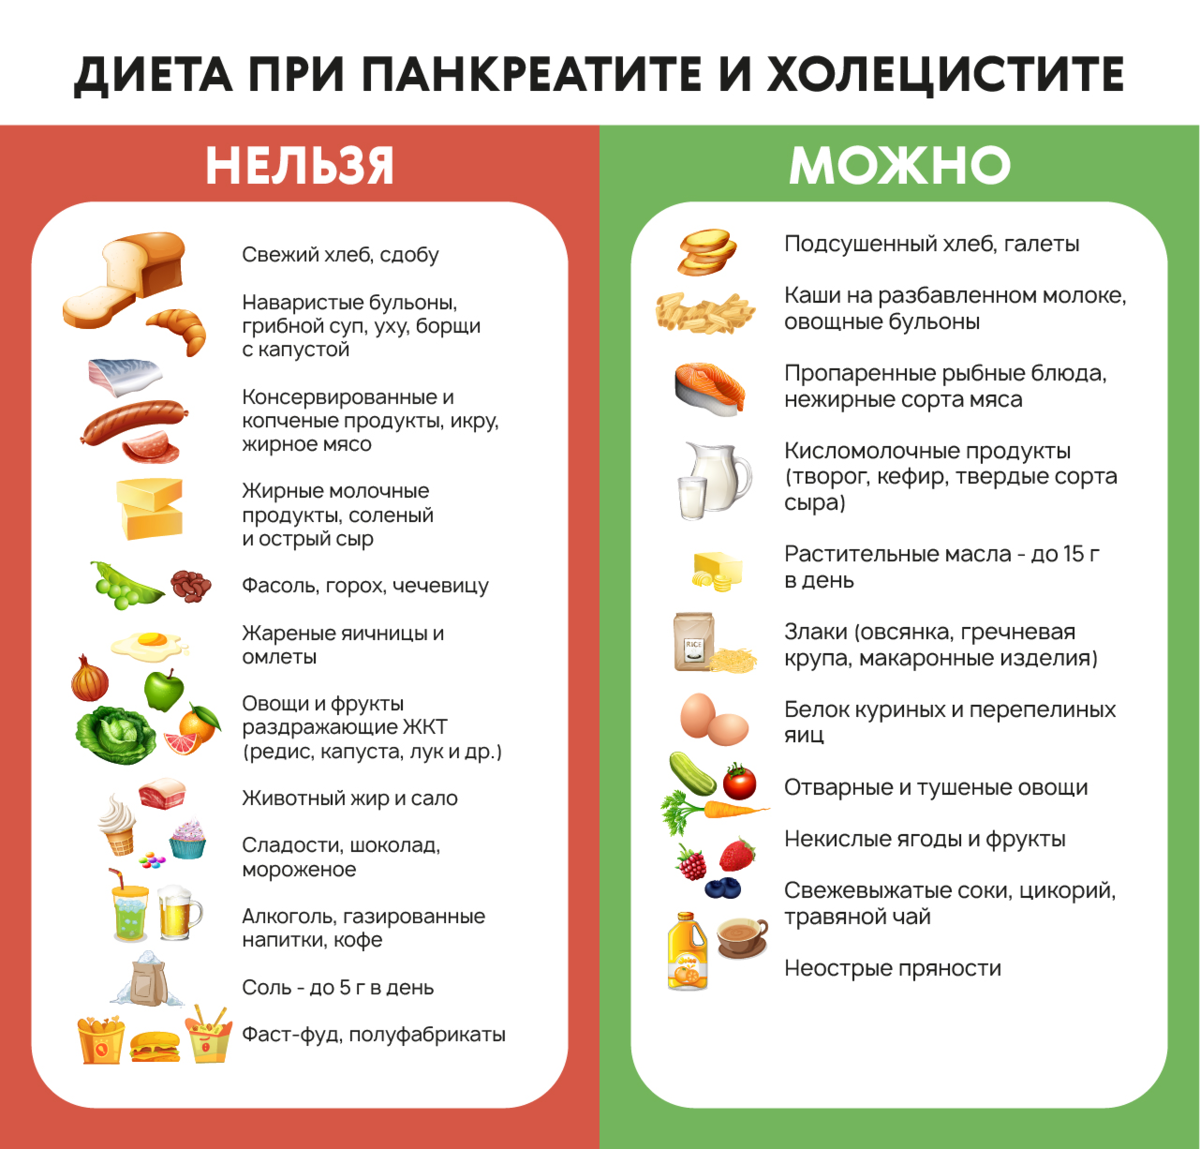 Диета при панкреатите: рецепты блюд, полезные продукты и правила приготовления